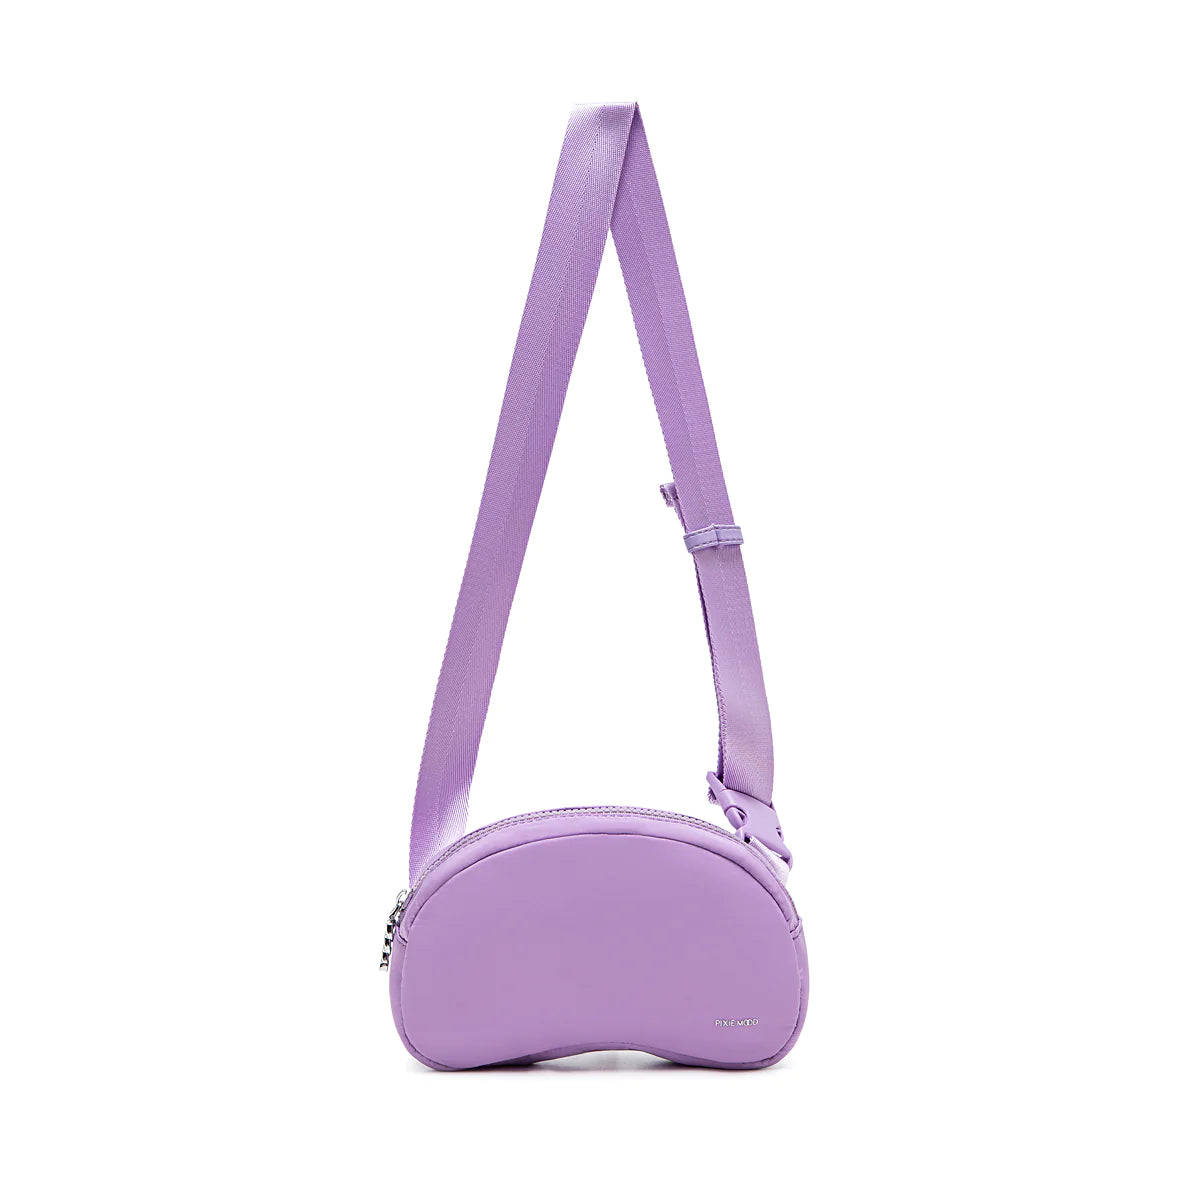 Bean Belt Bag - Lavender Nylon | Pixie Mood